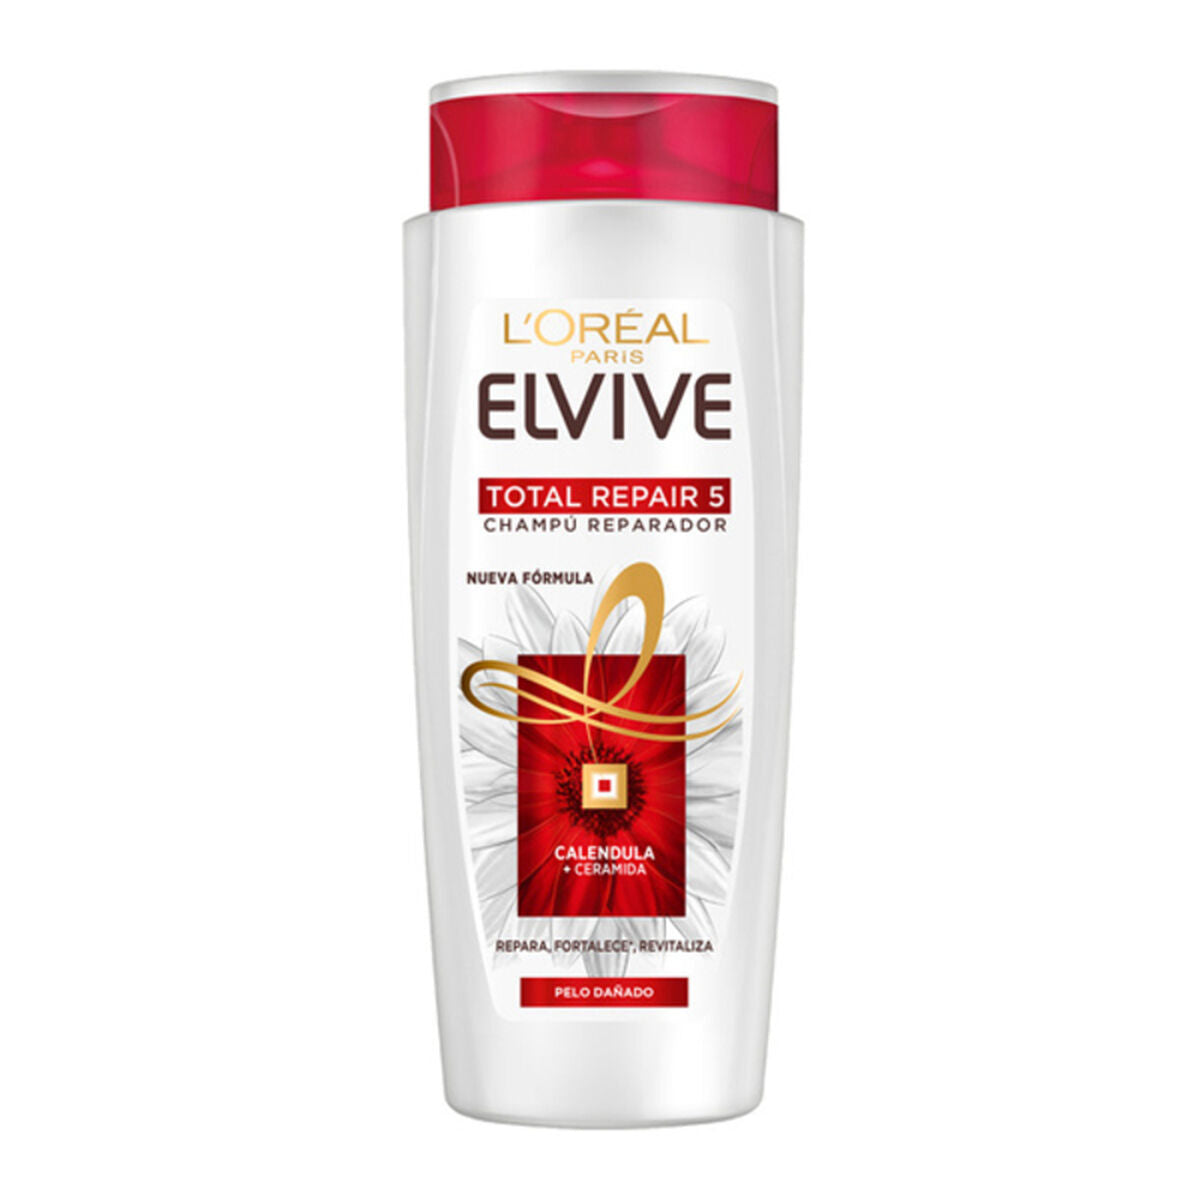 Revitalizing Shampoo Elvive Total Repair 5 L'Oreal Make Up (690 ml)